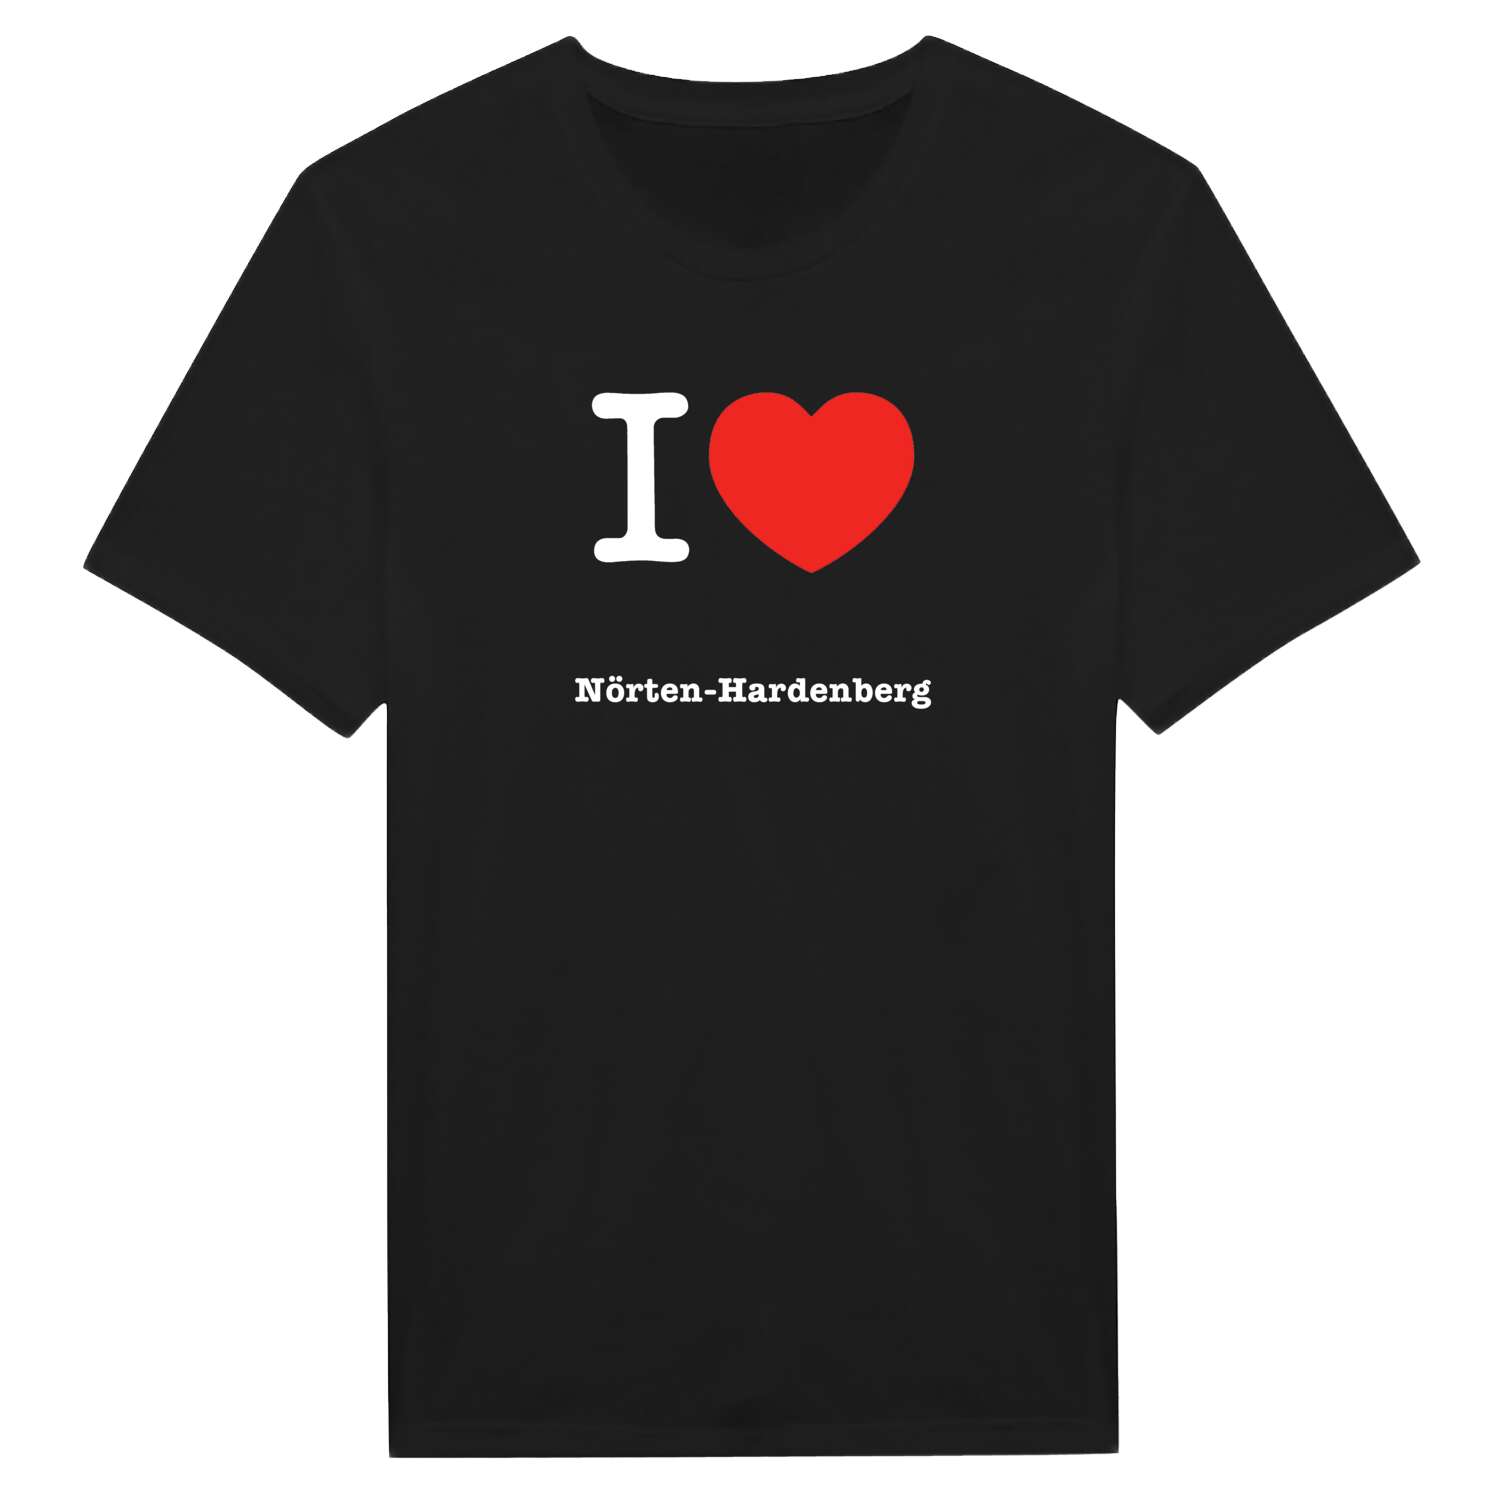 Nörten-Hardenberg T-Shirt »I love«